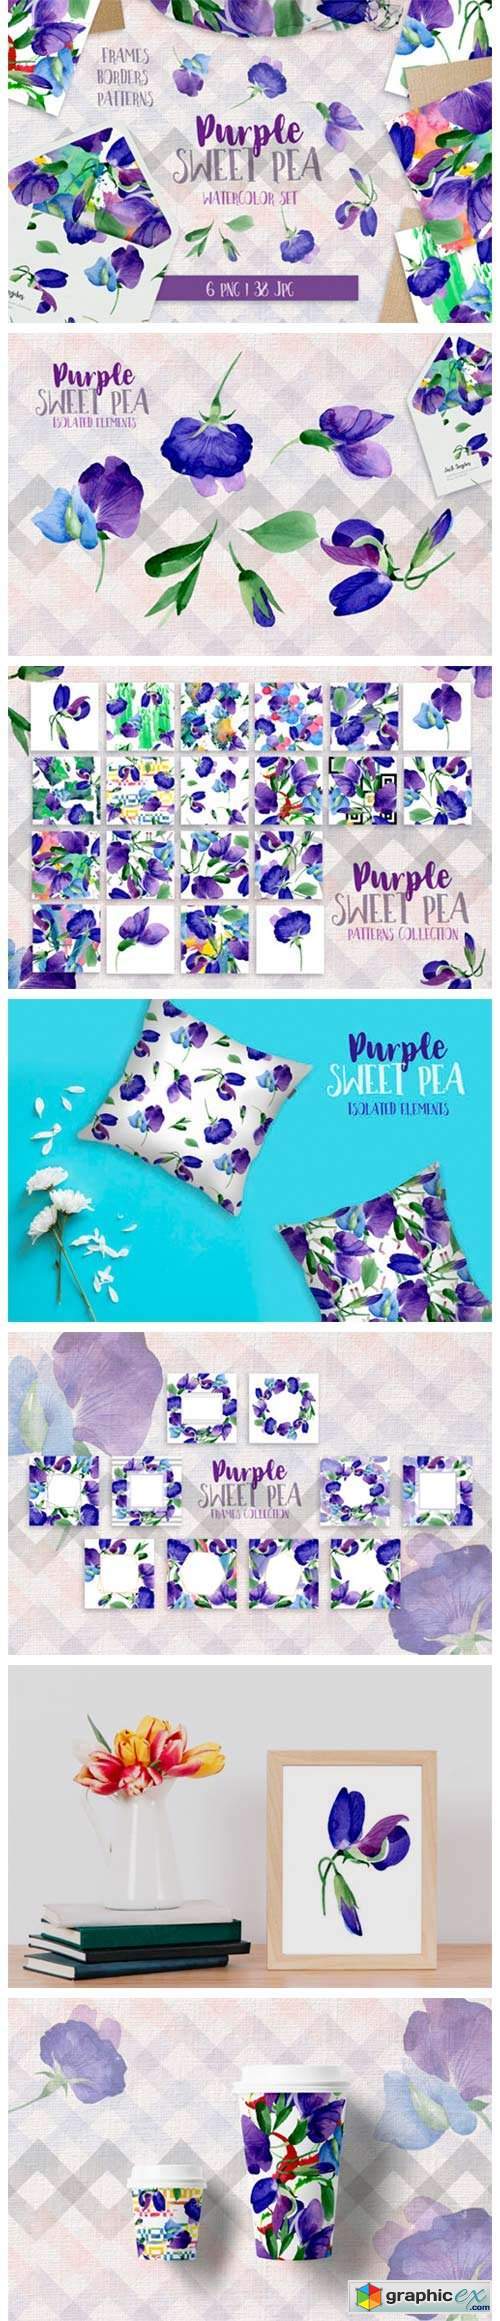 Purple Sweet Pea PNG Watercolor Flower Set 